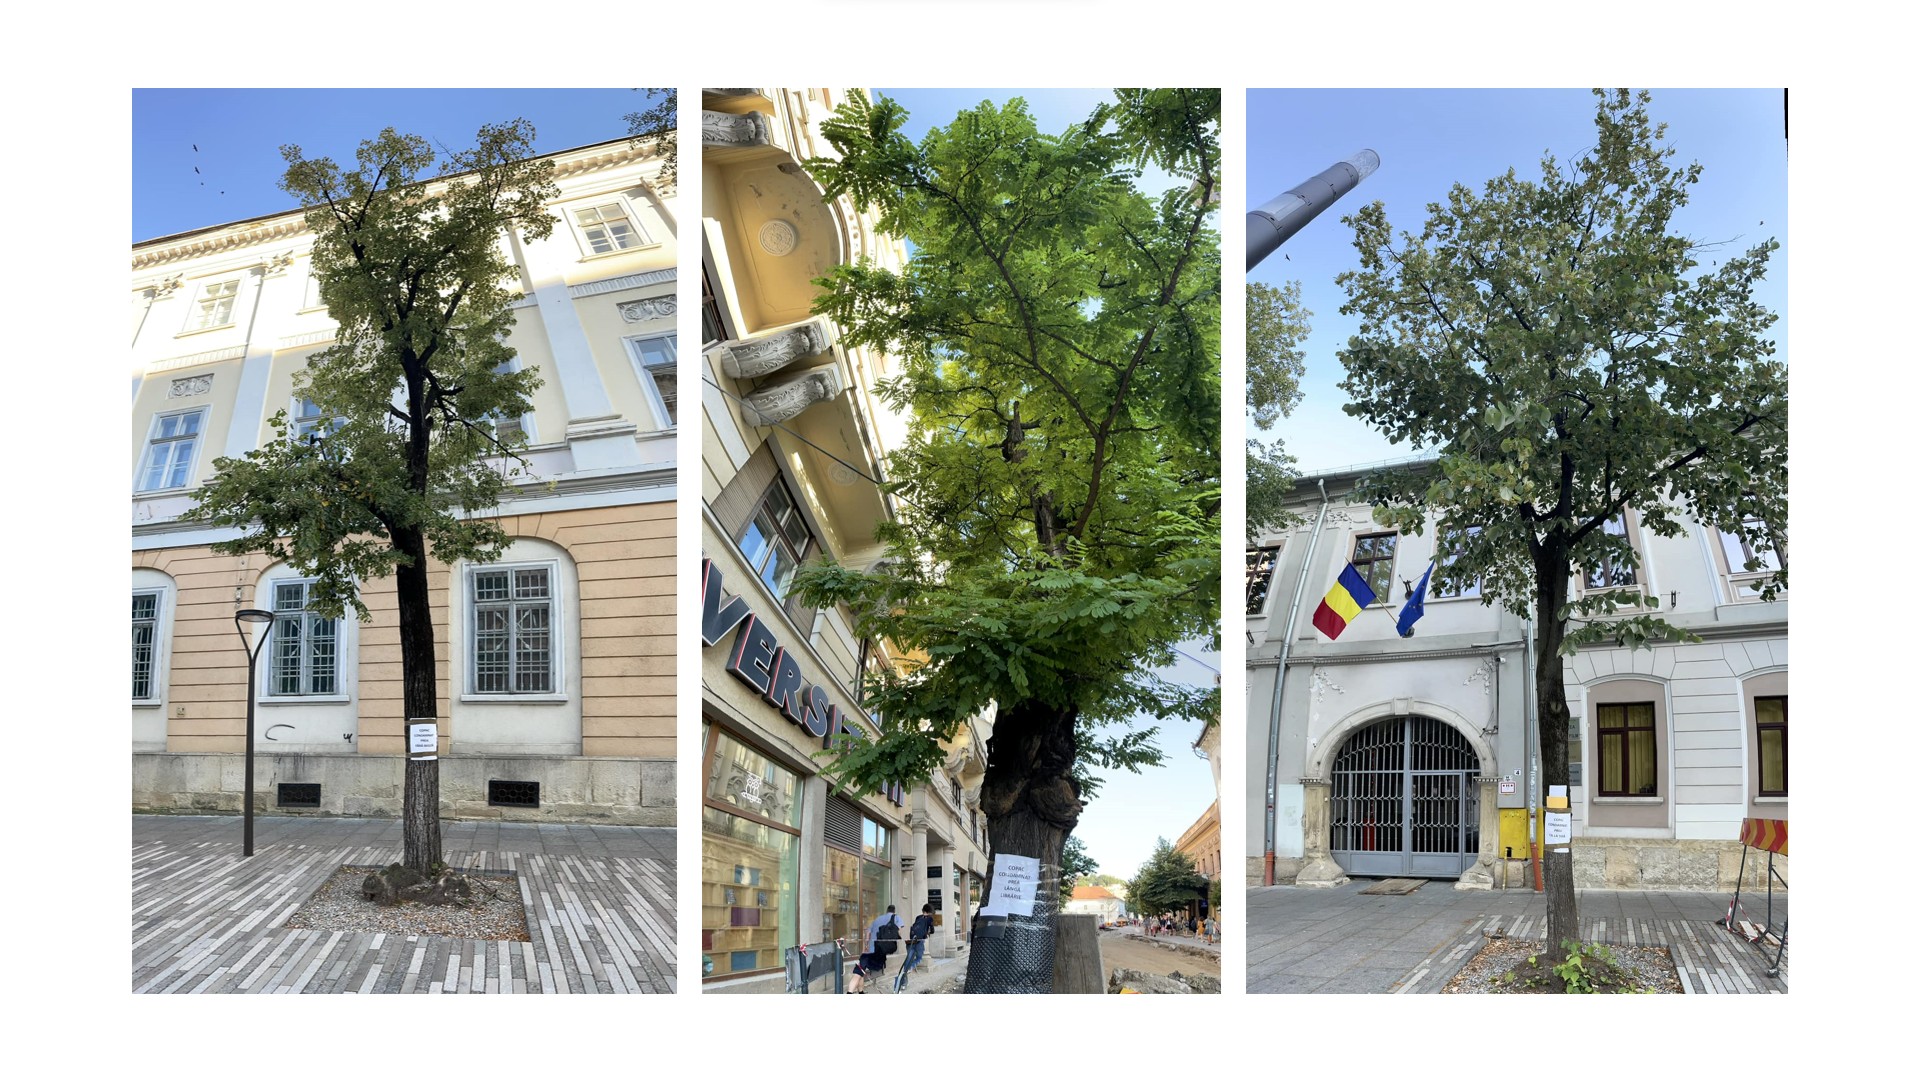 Emil Boc: megmarad az Egyetem utcai fák többsége